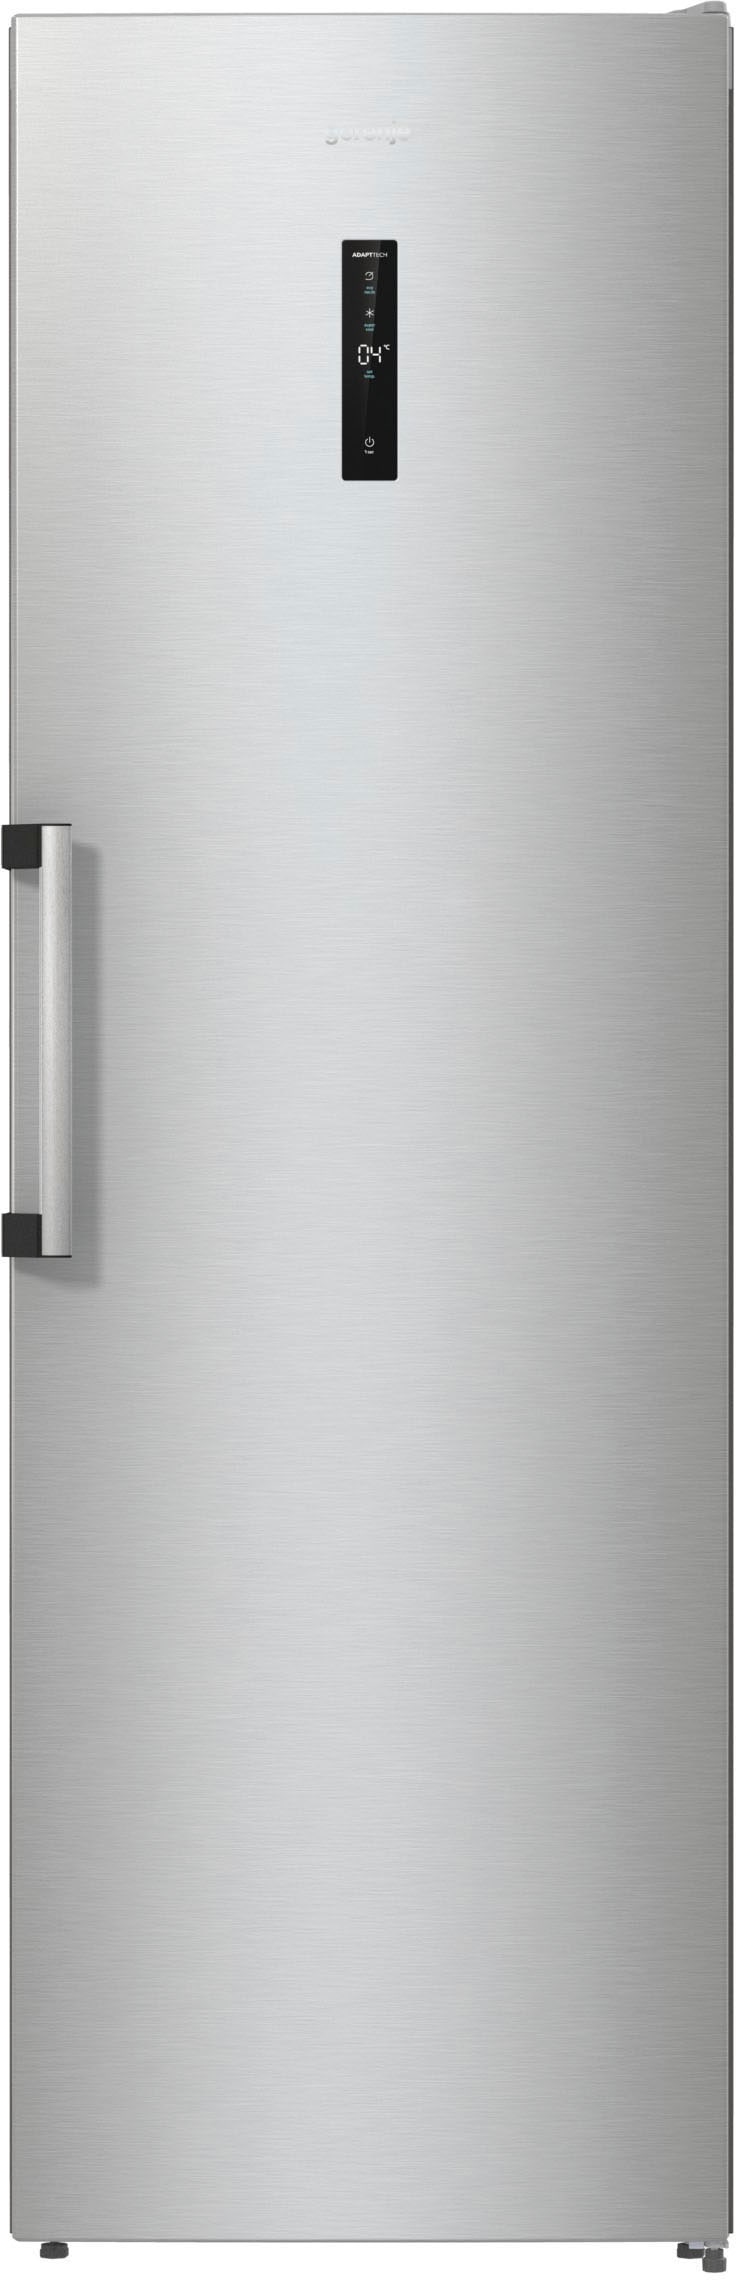 Kühlschrank, R619CSXL6, 185 cm hoch, 59,5 cm breit, mit einem 26 l Kaltlagerfach